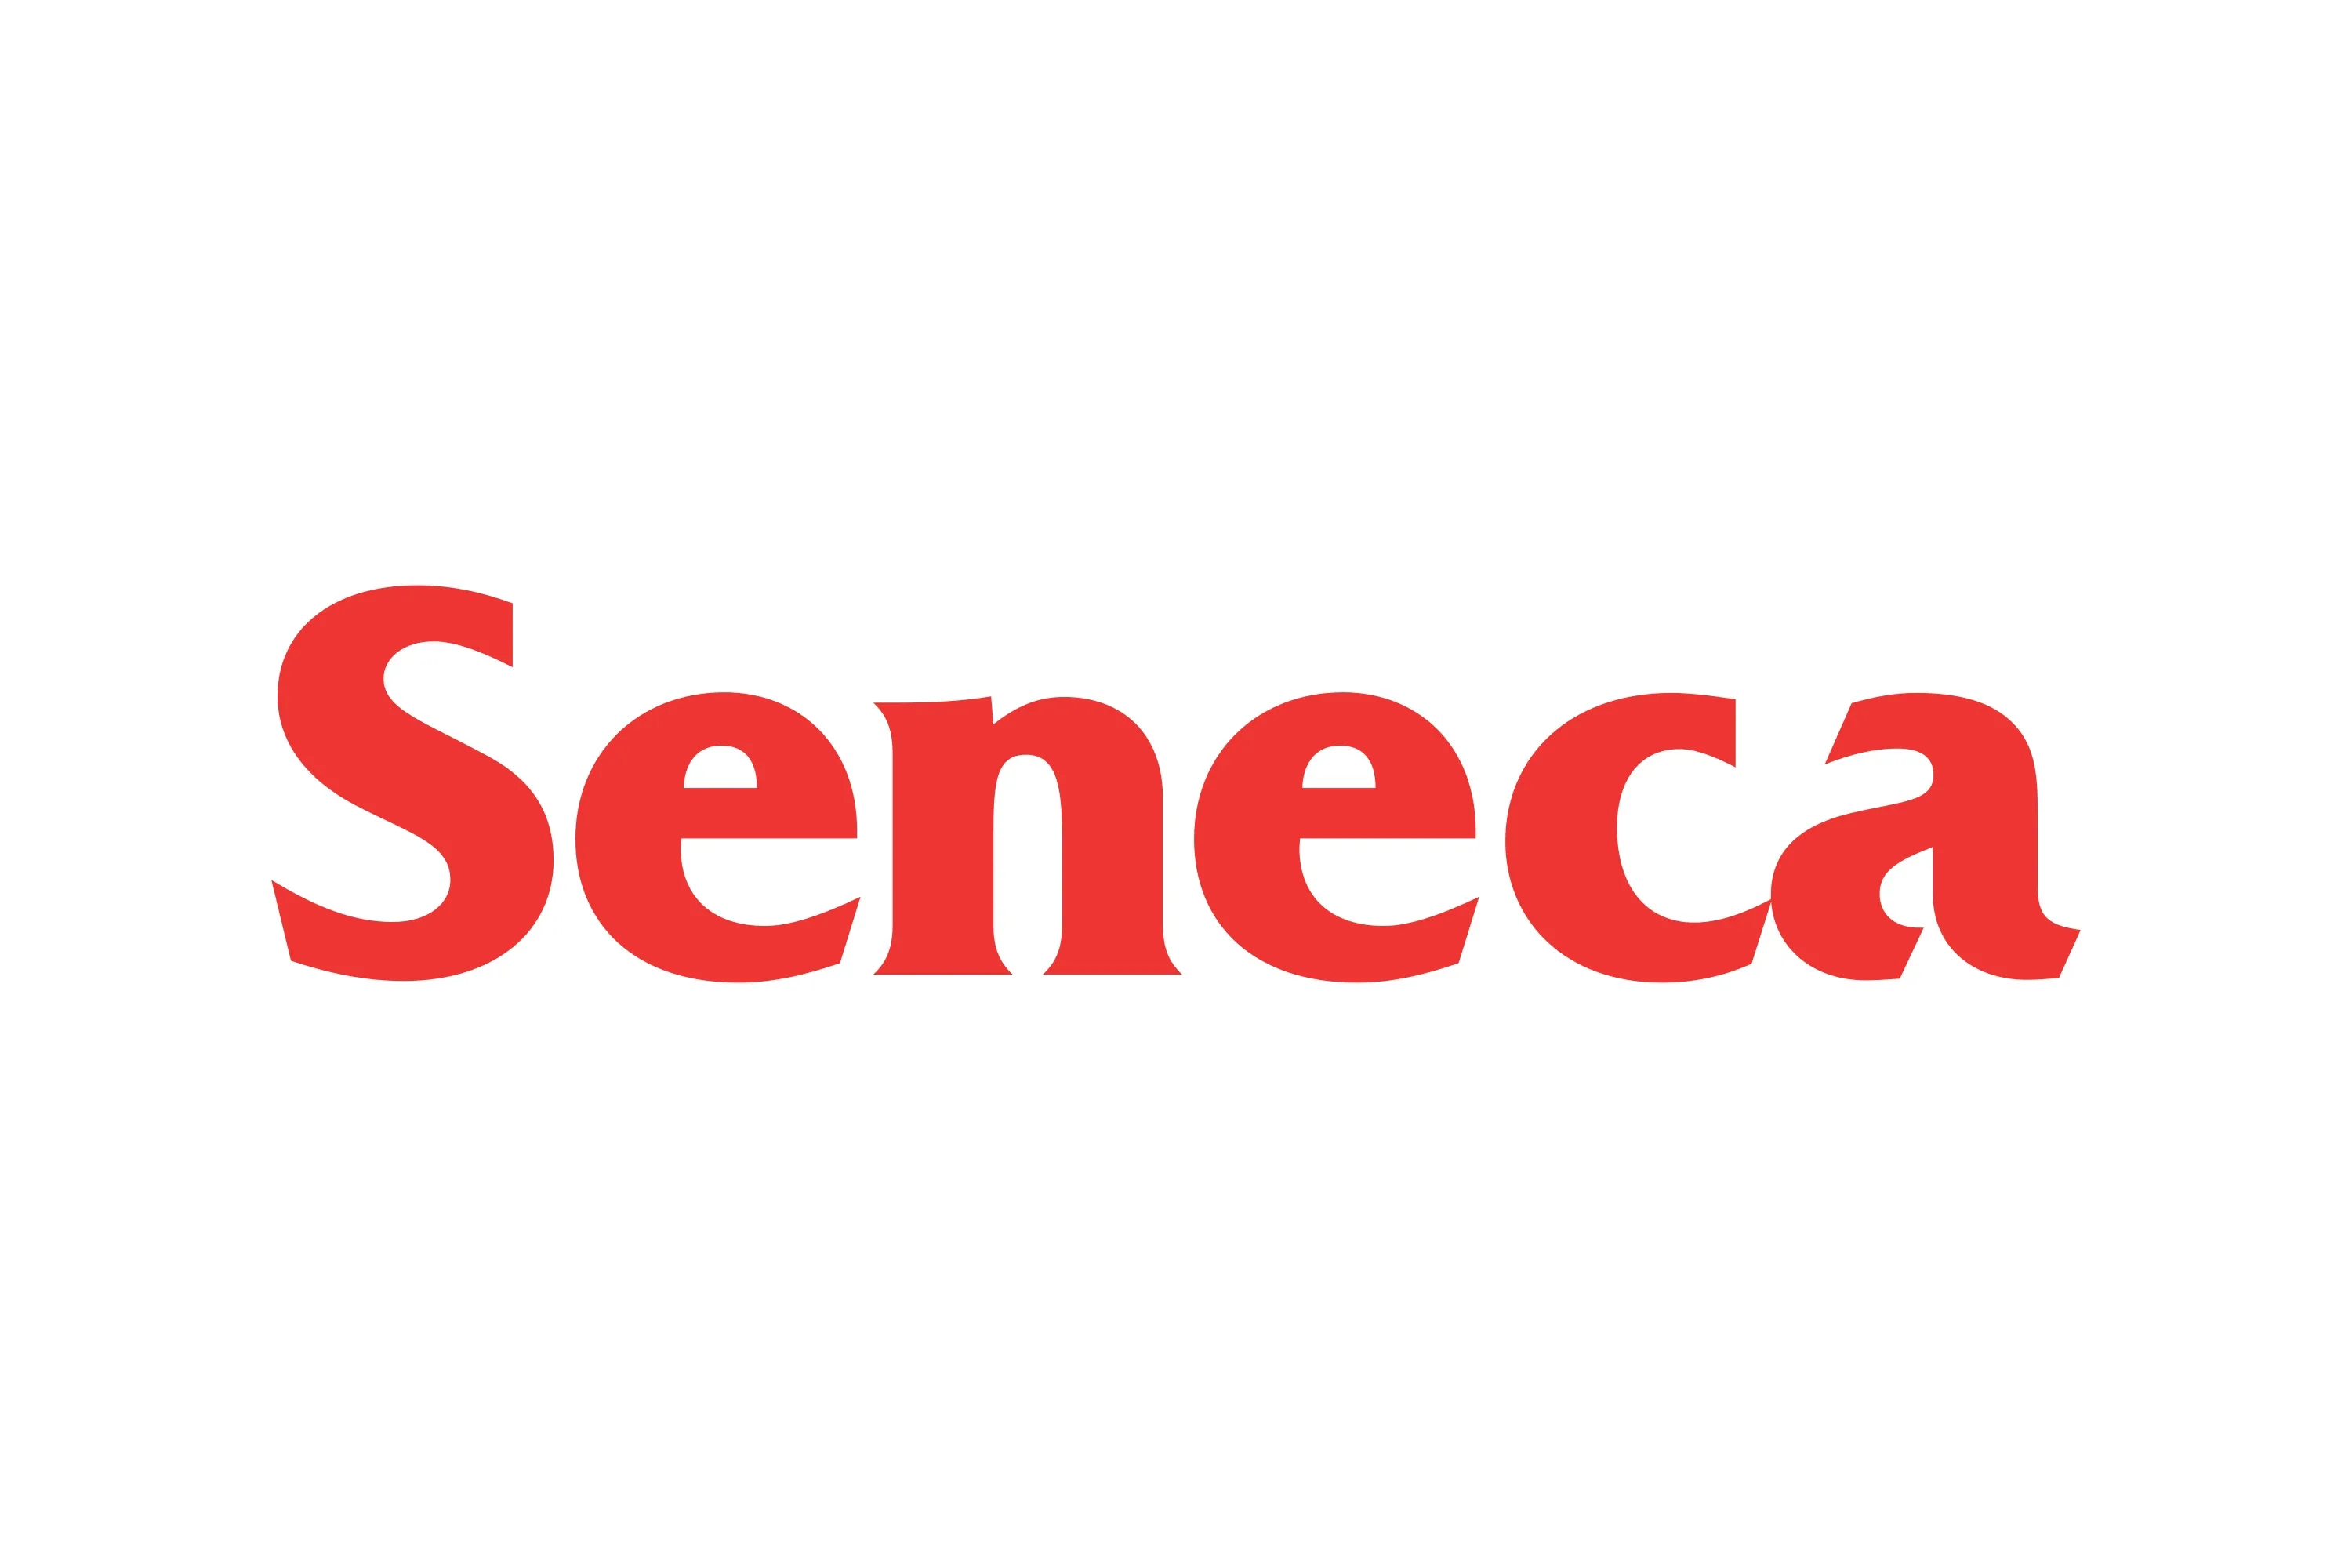 seneca-college